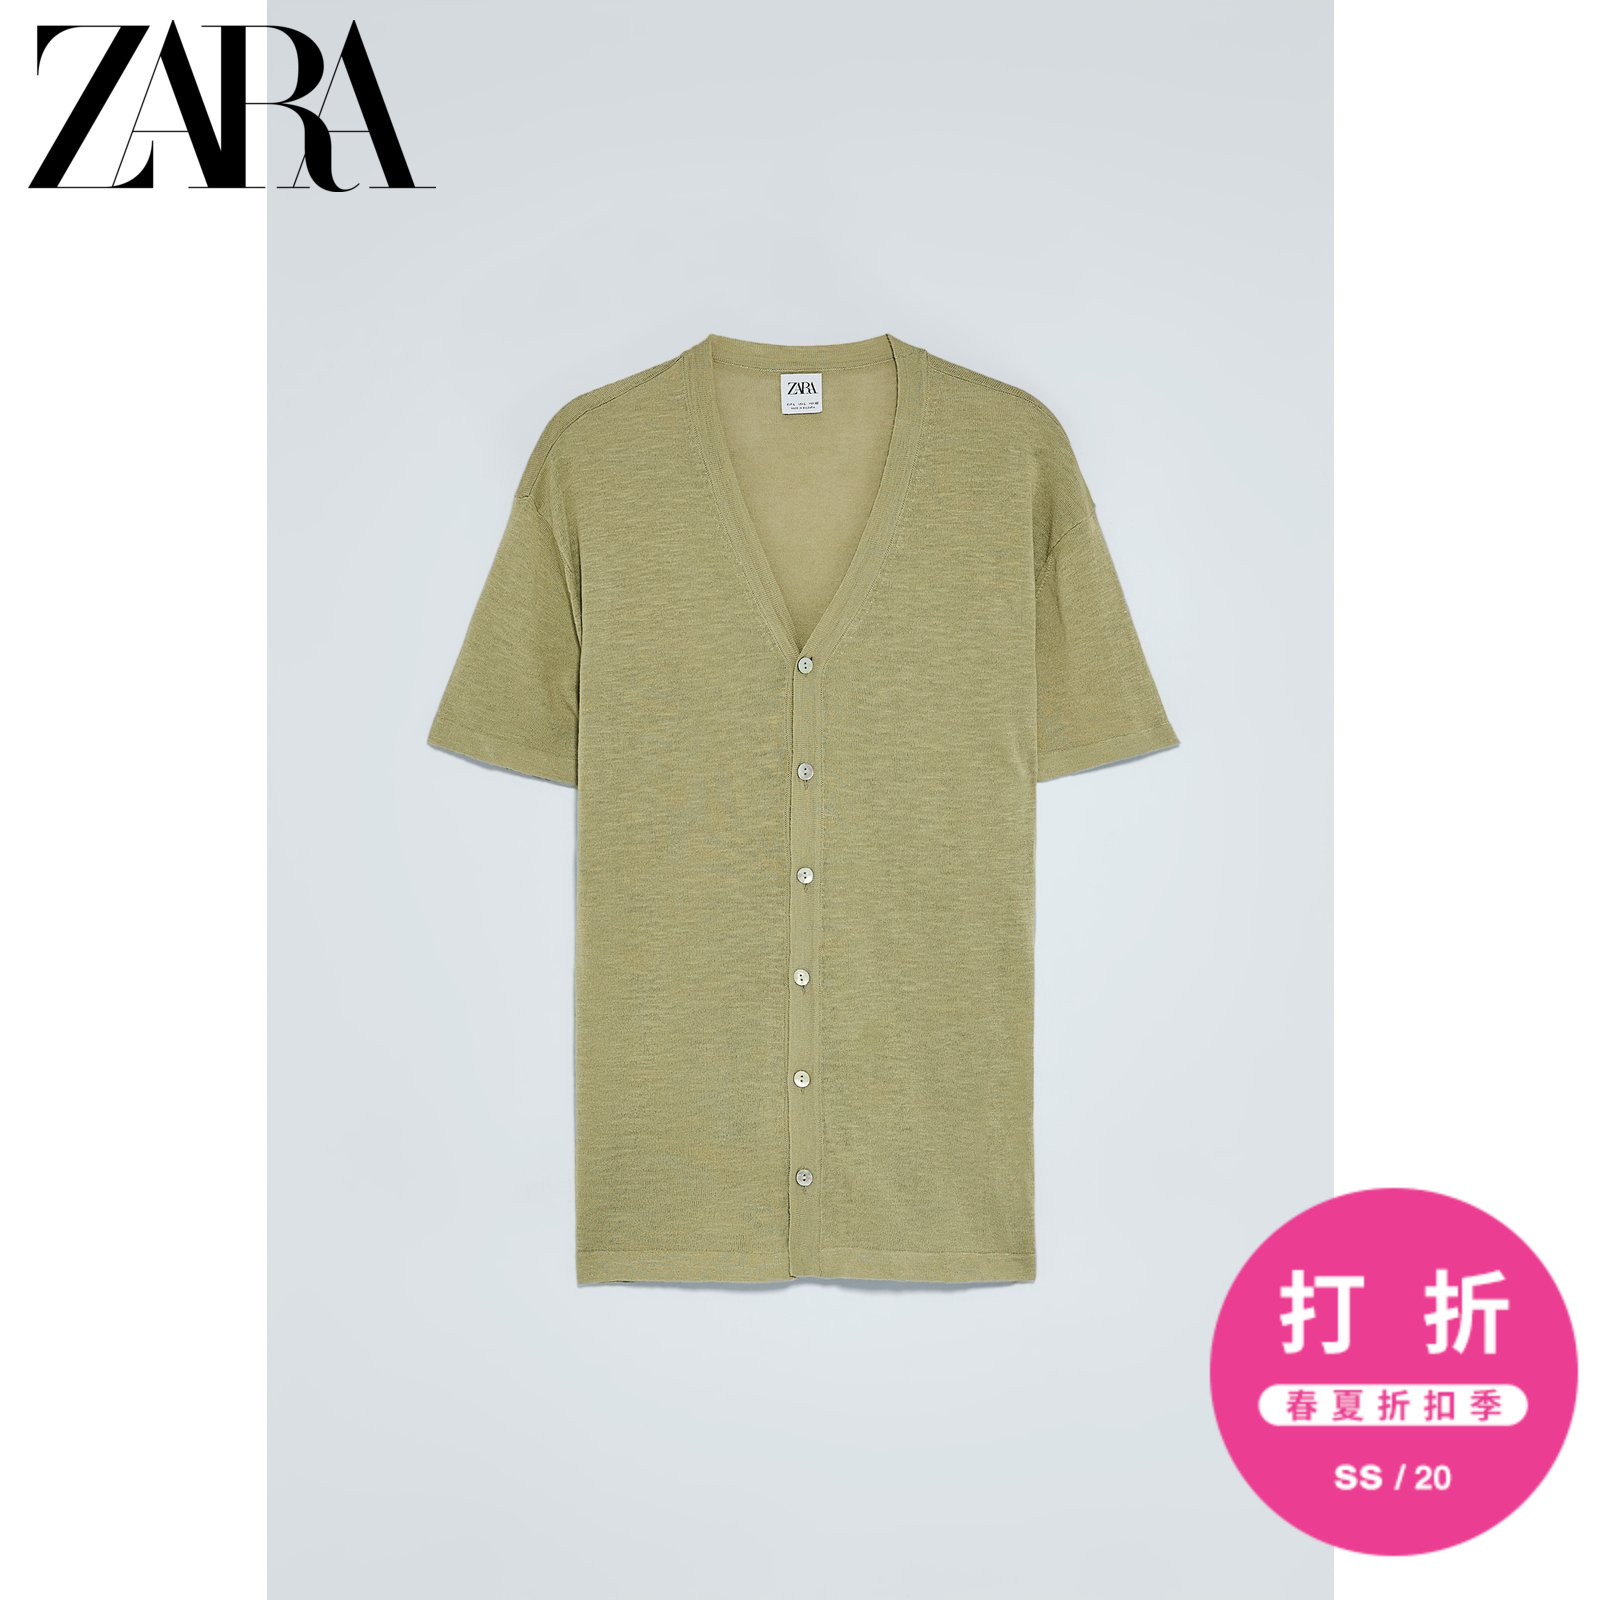 ZARA【打折】 男装 棉麻混纺排扣饰短袖针织T恤 00693435982